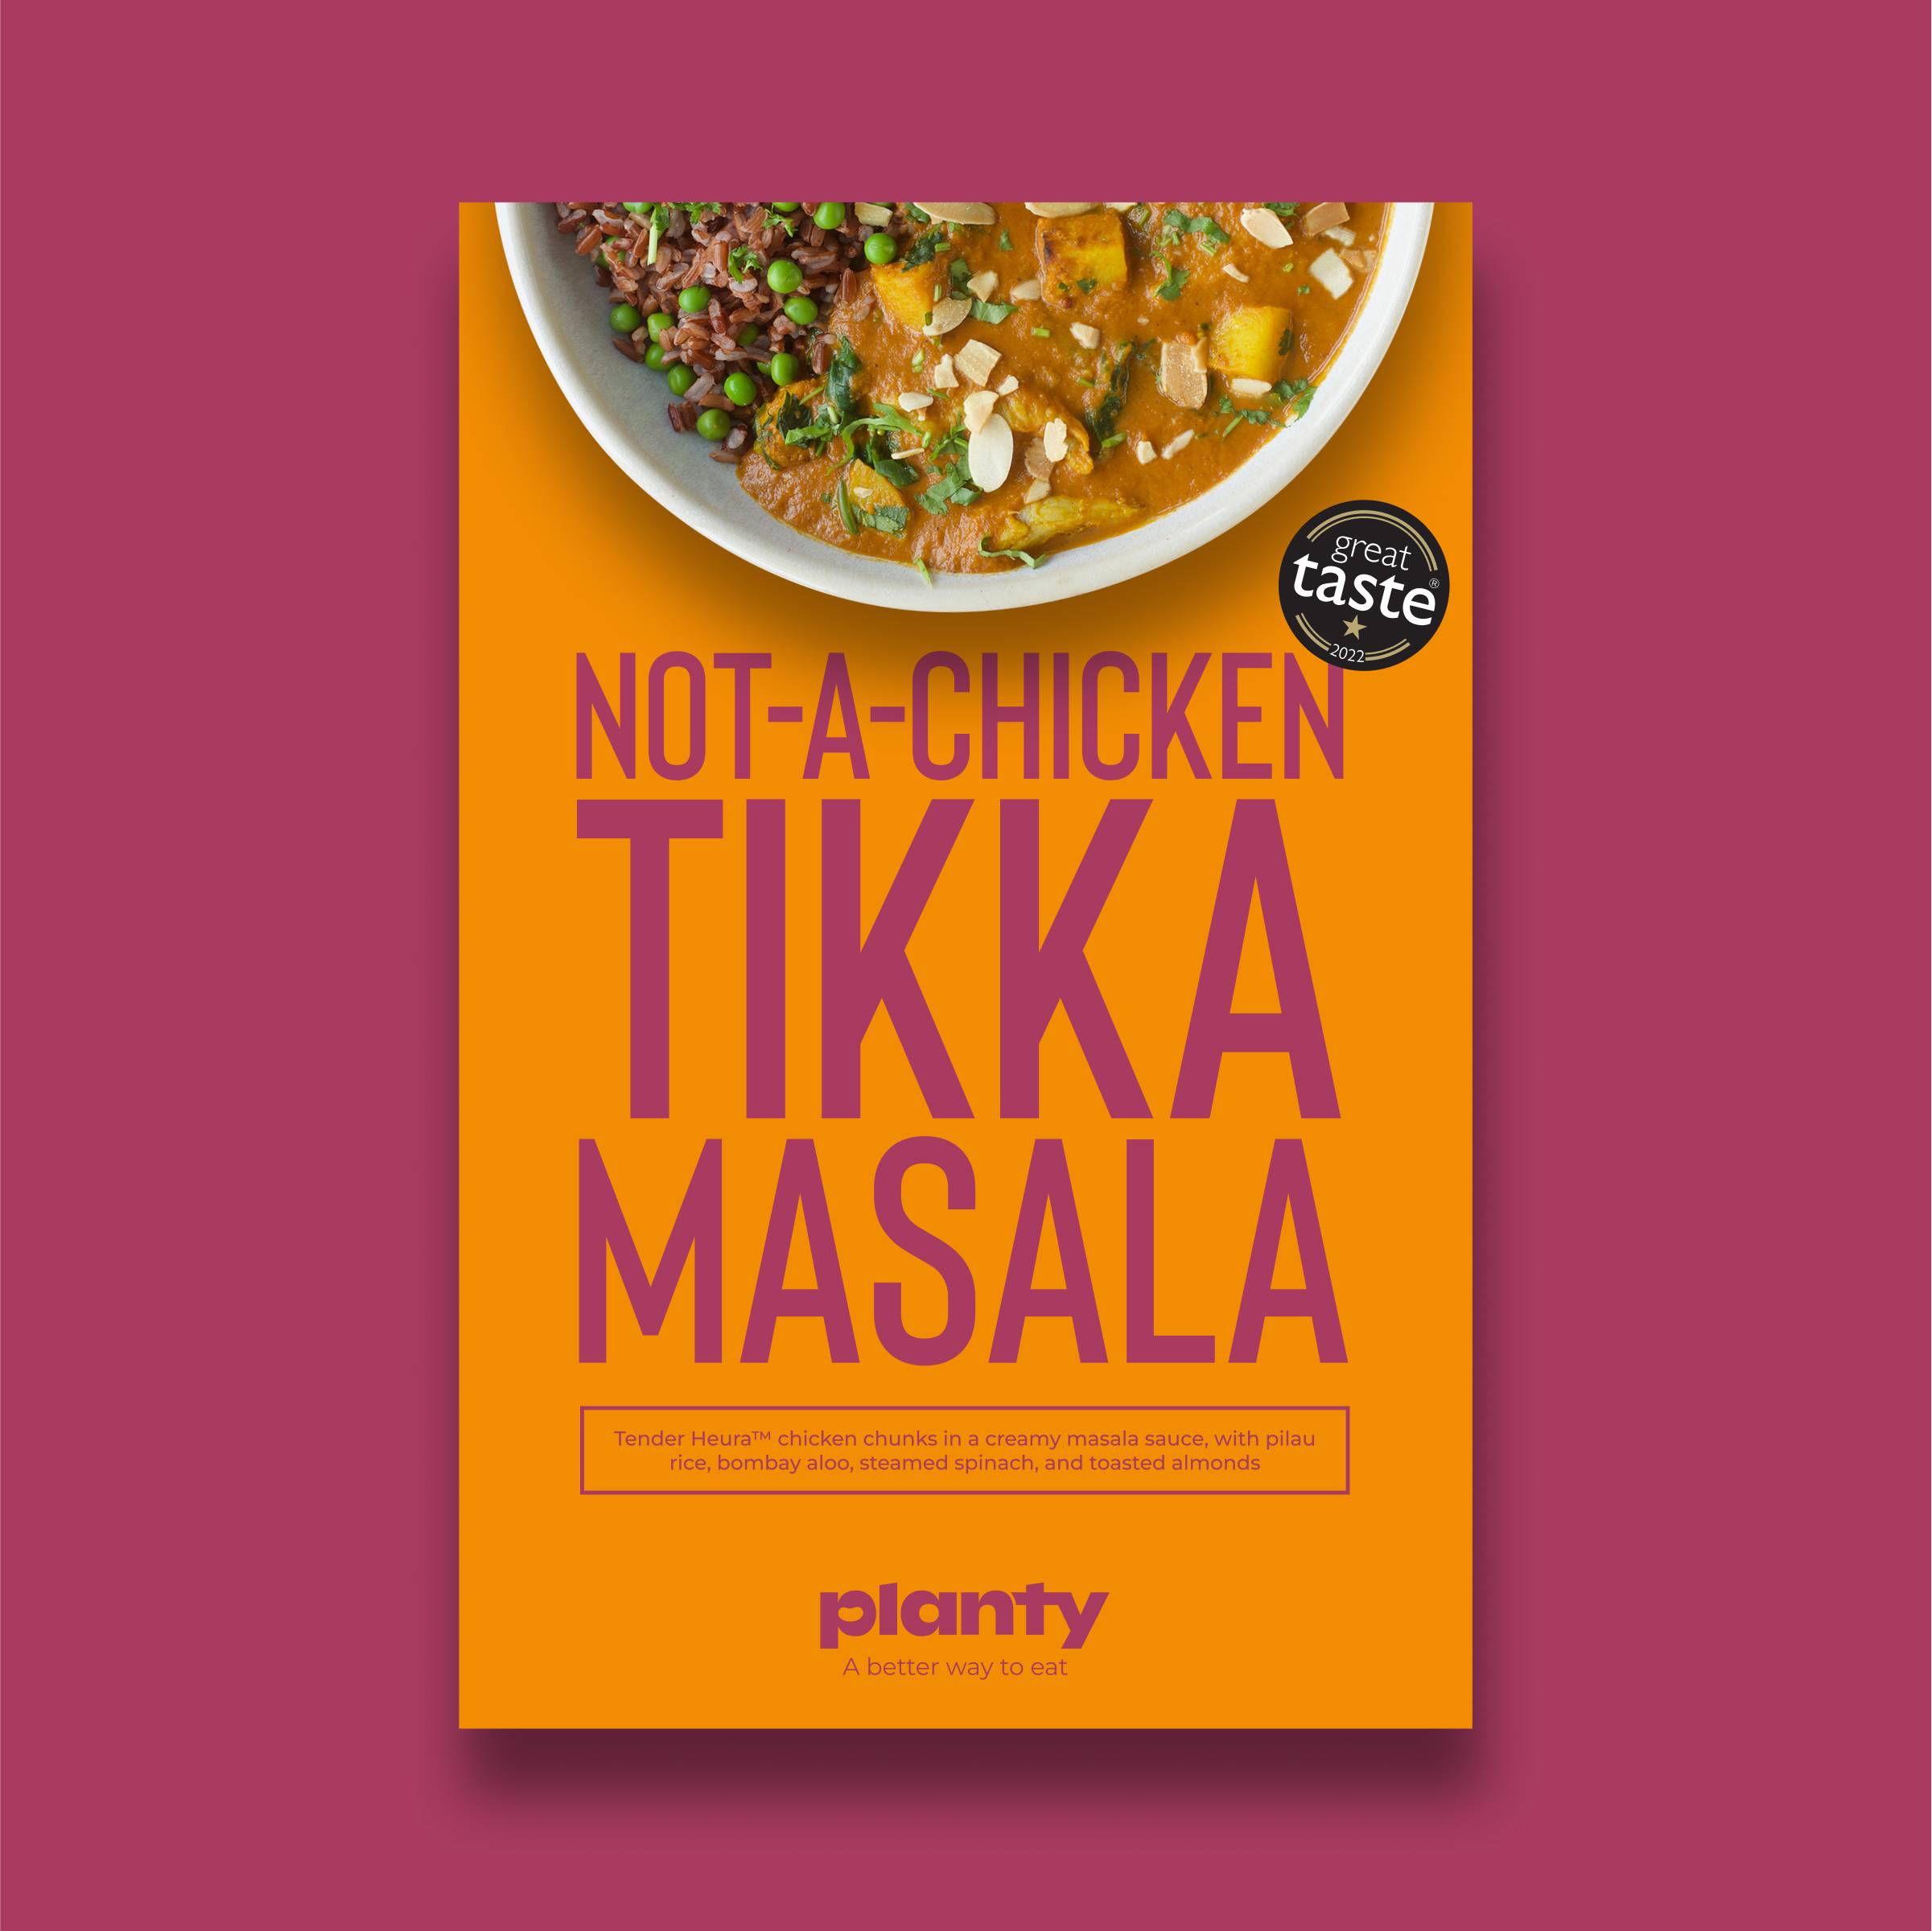 Not-a-Chicken Tikka Masala image 2